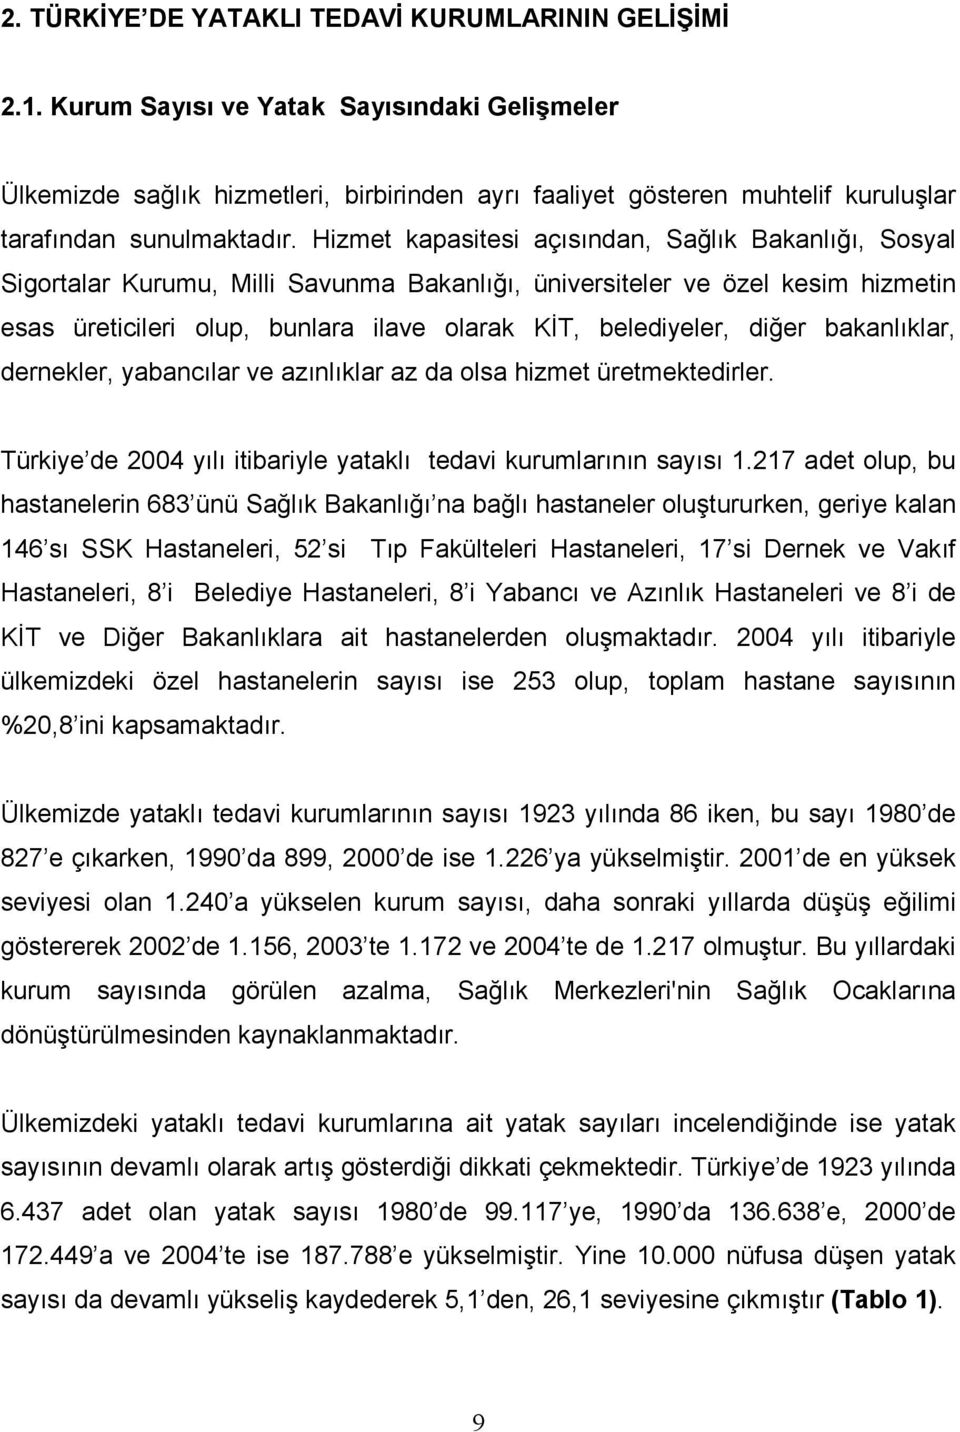 diğer bakanlıklar, dernekler, yabancılar ve azınlıklar az da olsa hizmet üretmektedirler. Türkiye de 2004 yılı itibariyle yataklı tedavi kurumlarının sayısı 1.